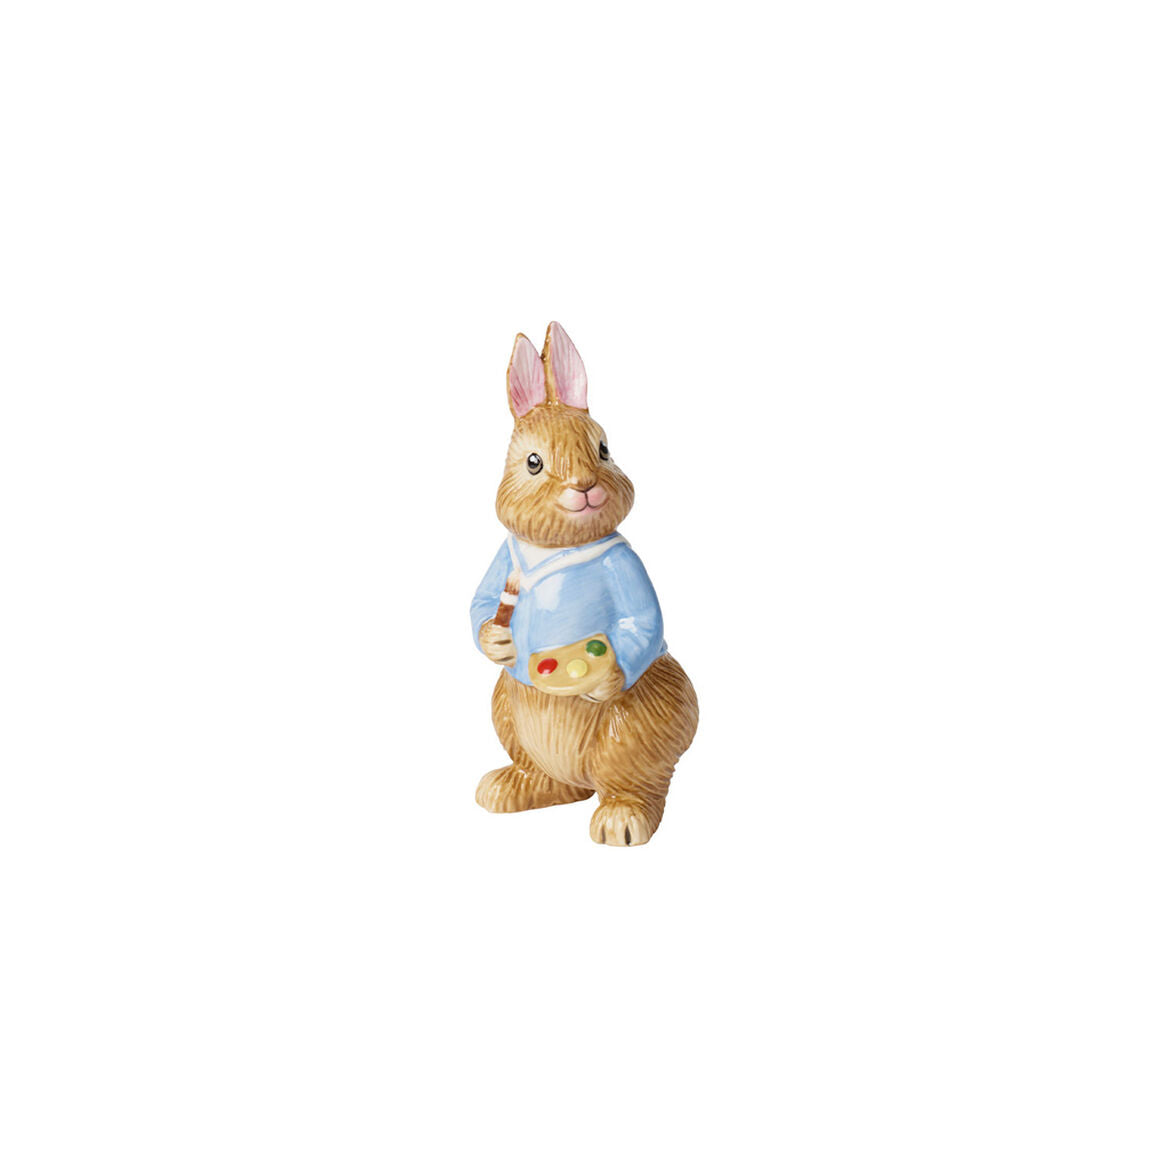 VILLEROY & BOCH - Bunny Tales Max Figura Coniglio 11cm Decorazione Pasquale